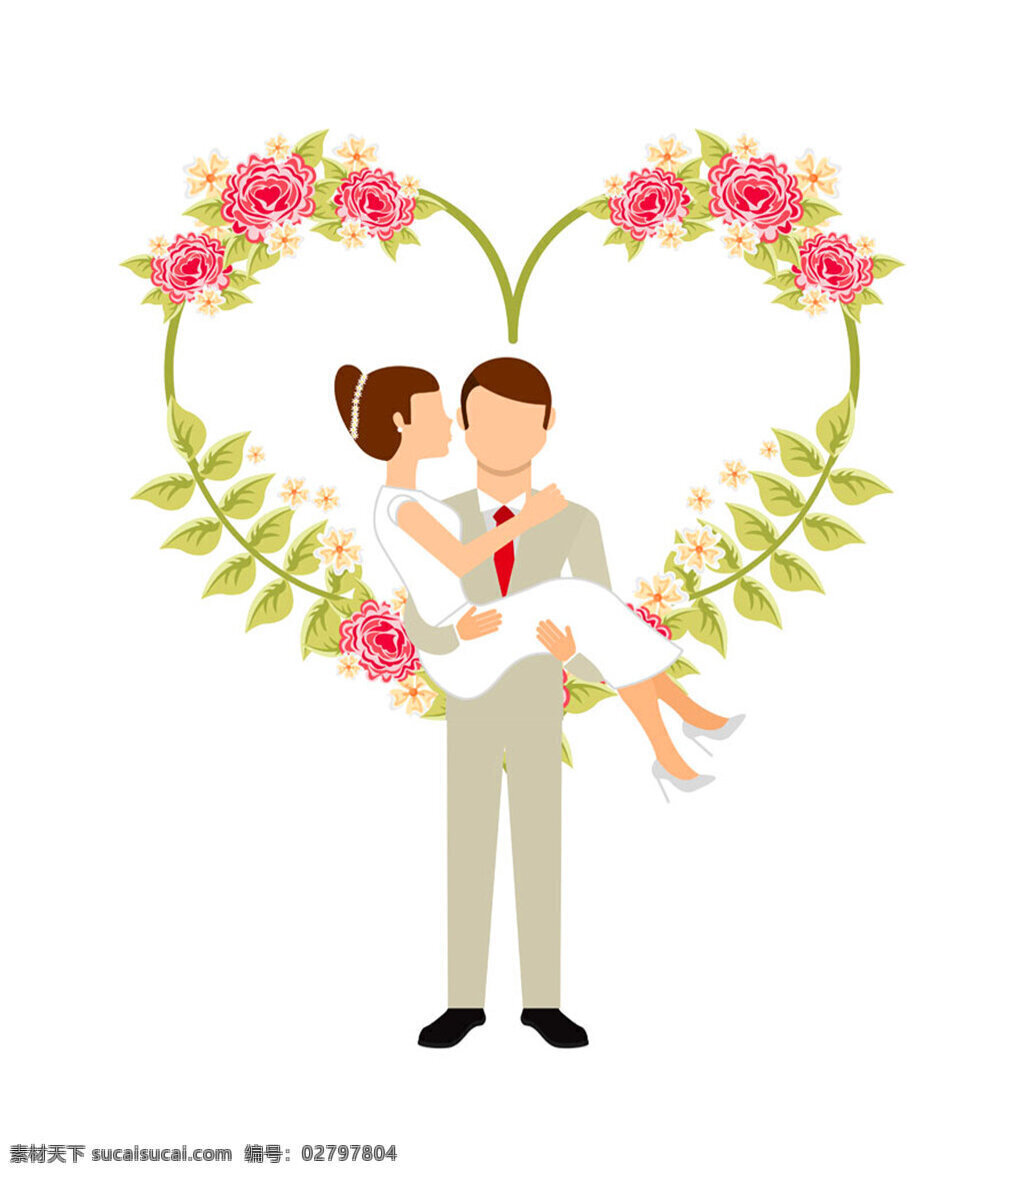 西式 婚礼 浪漫 卡片 矢量 标志 标志设计 抽象设计 红酒 婚礼图标 婚礼用品 婚庆 节日 结婚 情人节 节日素材 矢量素材